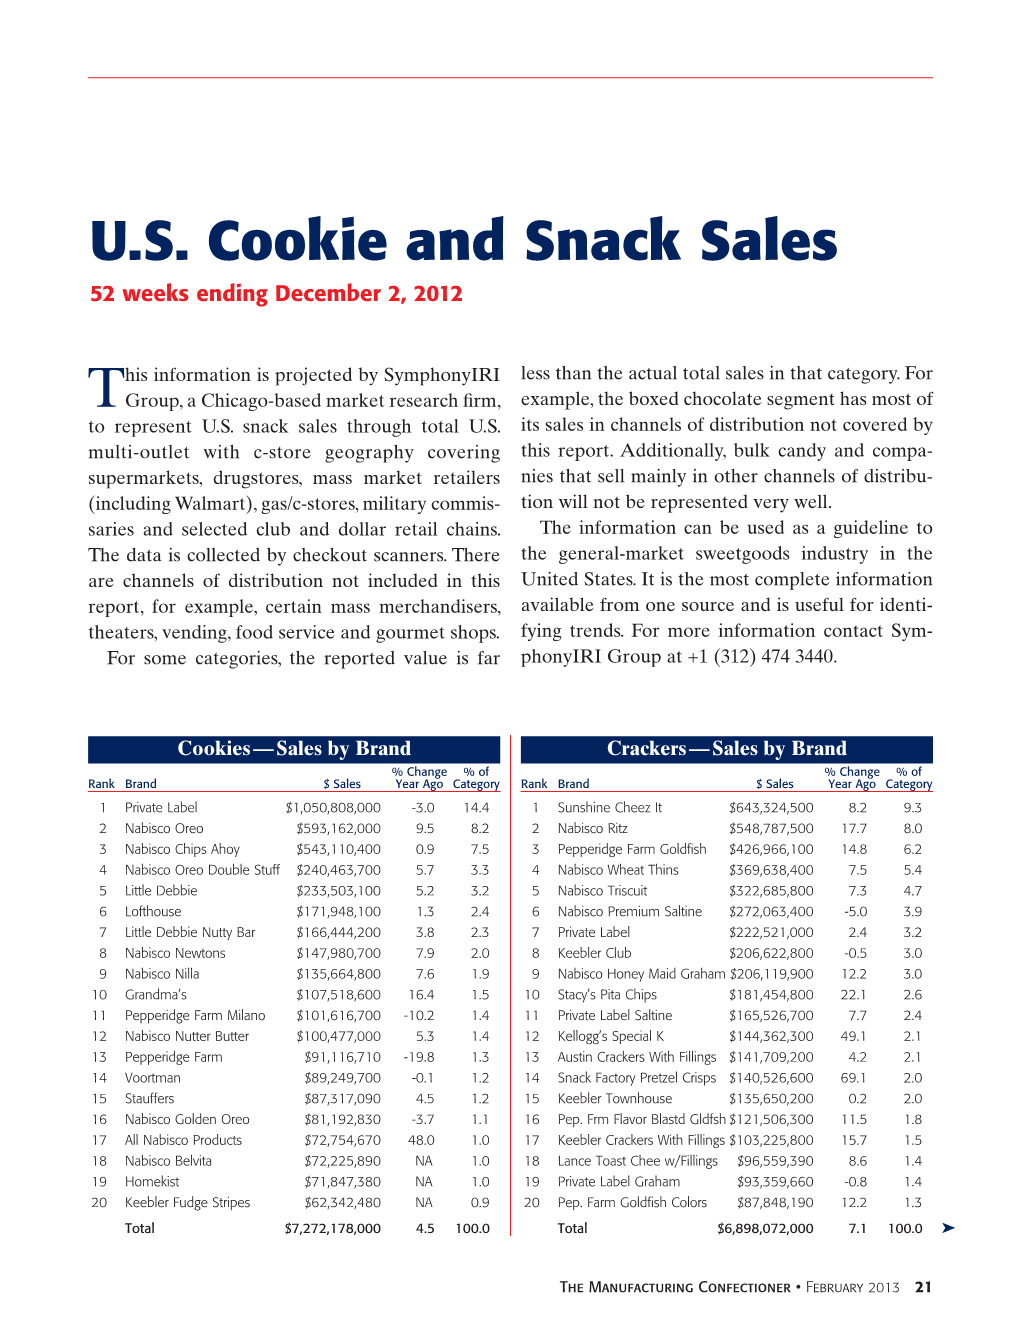 U.S. Cookie and Snack Sales 52 Weeks Ending December 2, 2012